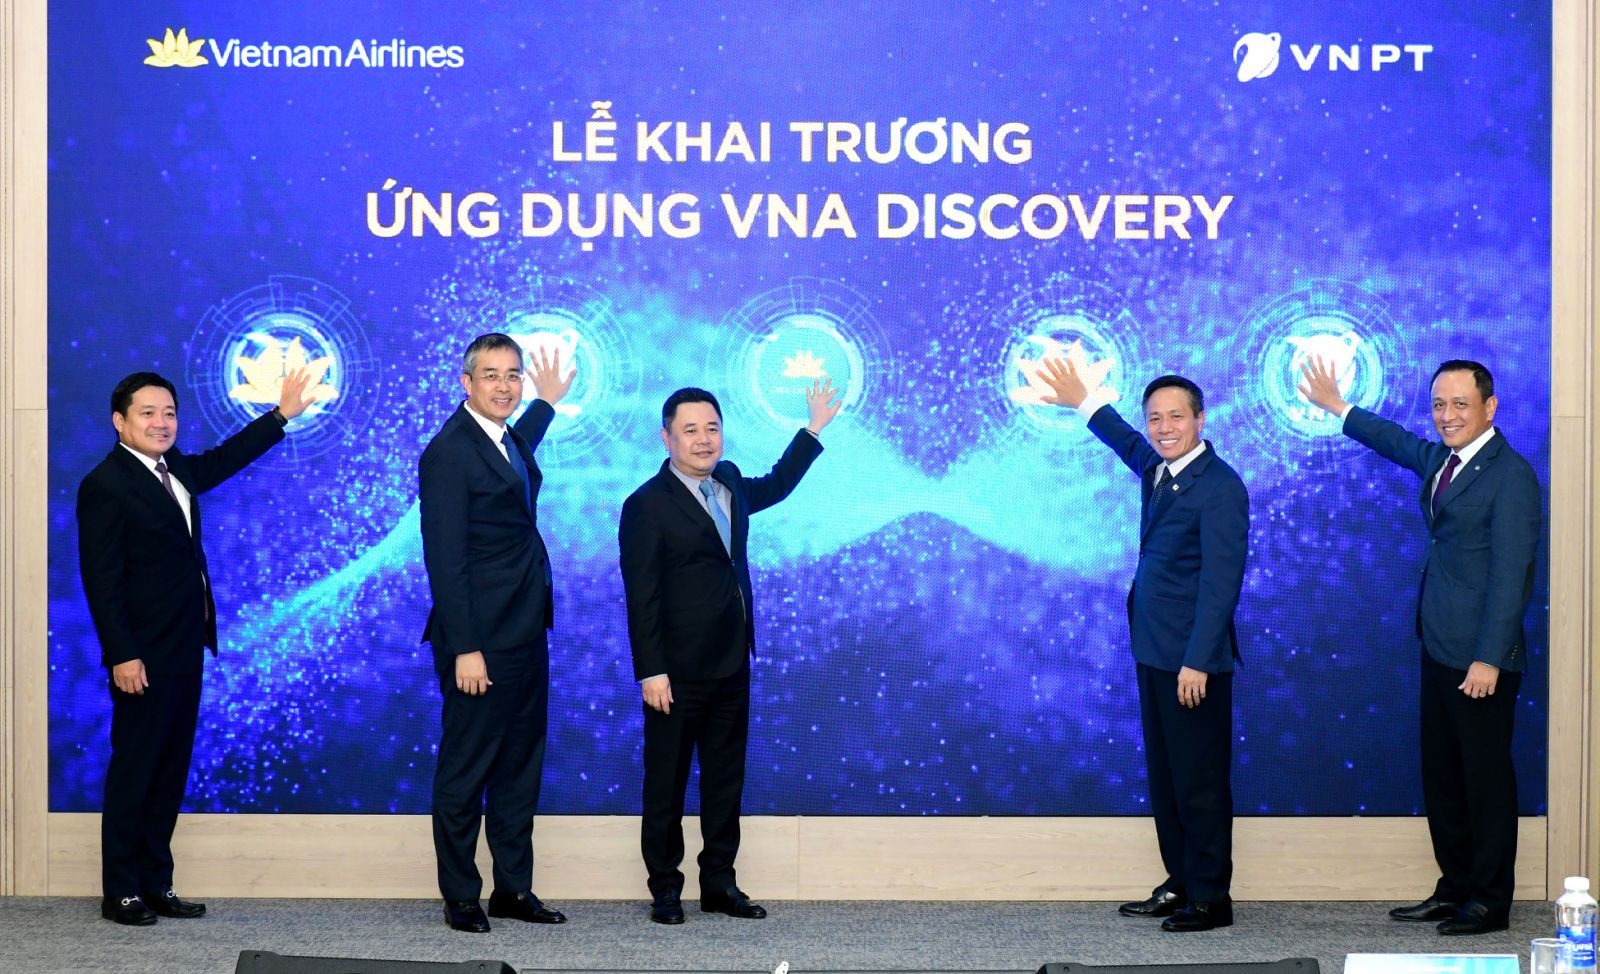 Lãnh đạo Vietnam Airline và VNPT nhấn nút khai trương Ứng dụng VNA Discovery.JPG